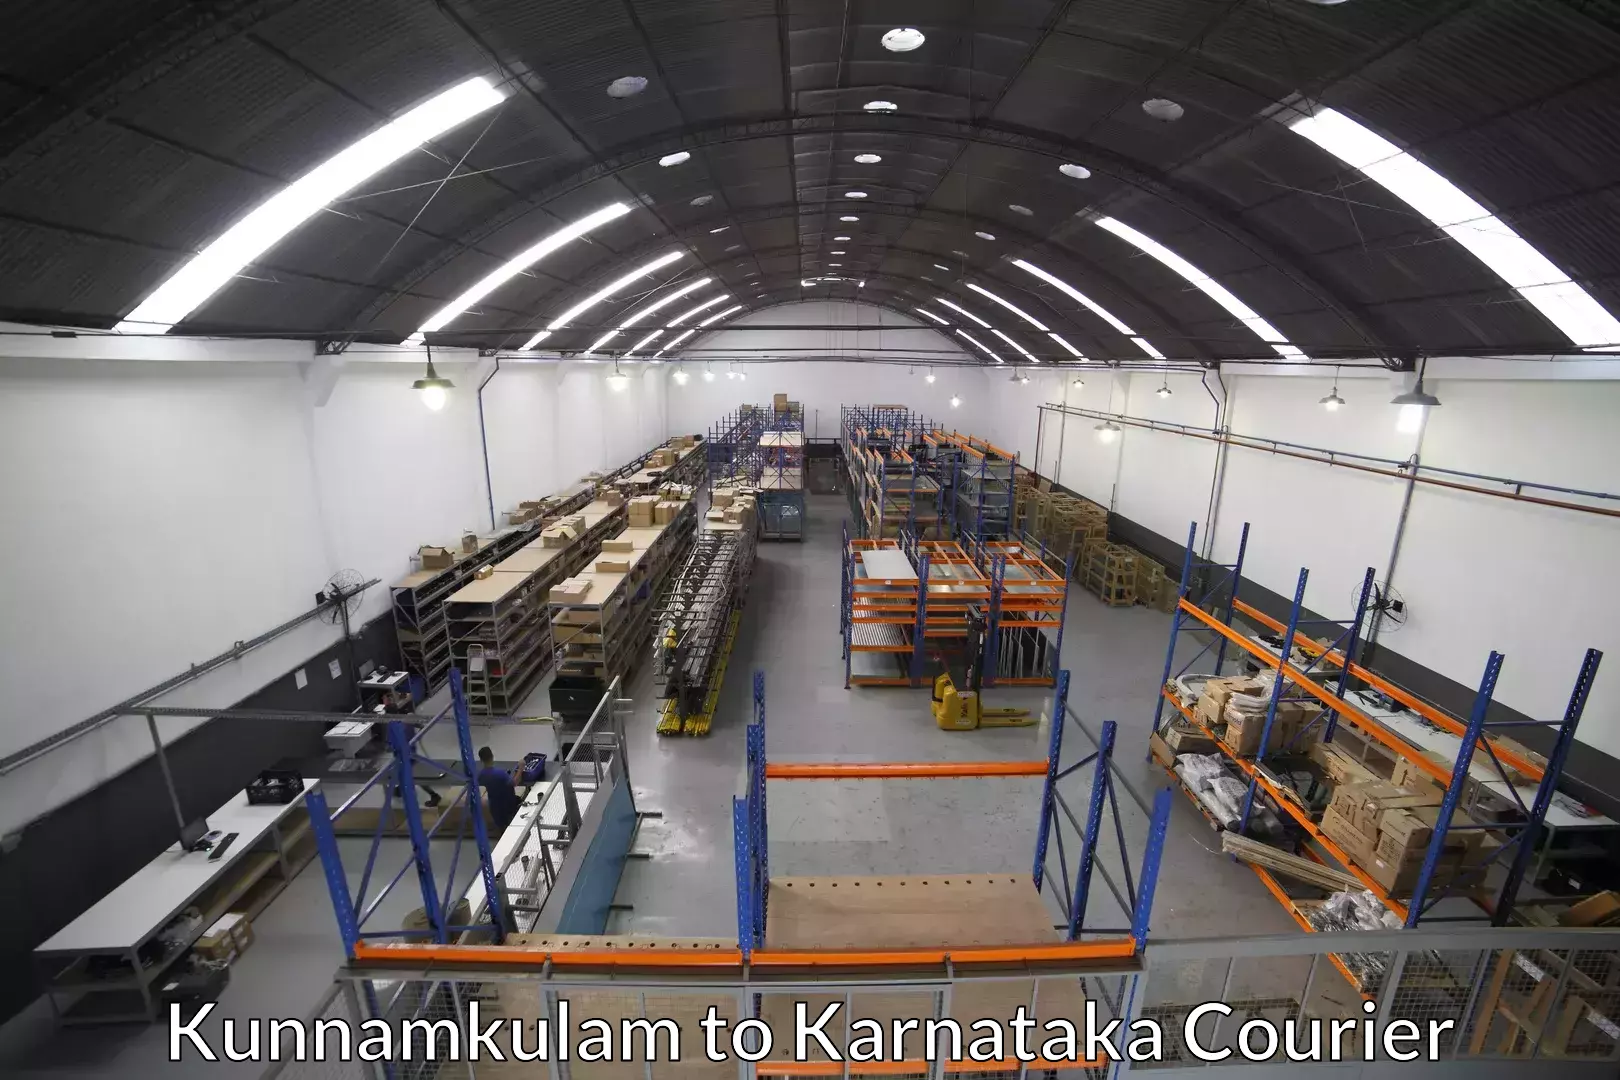 Furniture delivery service Kunnamkulam to Chikodi